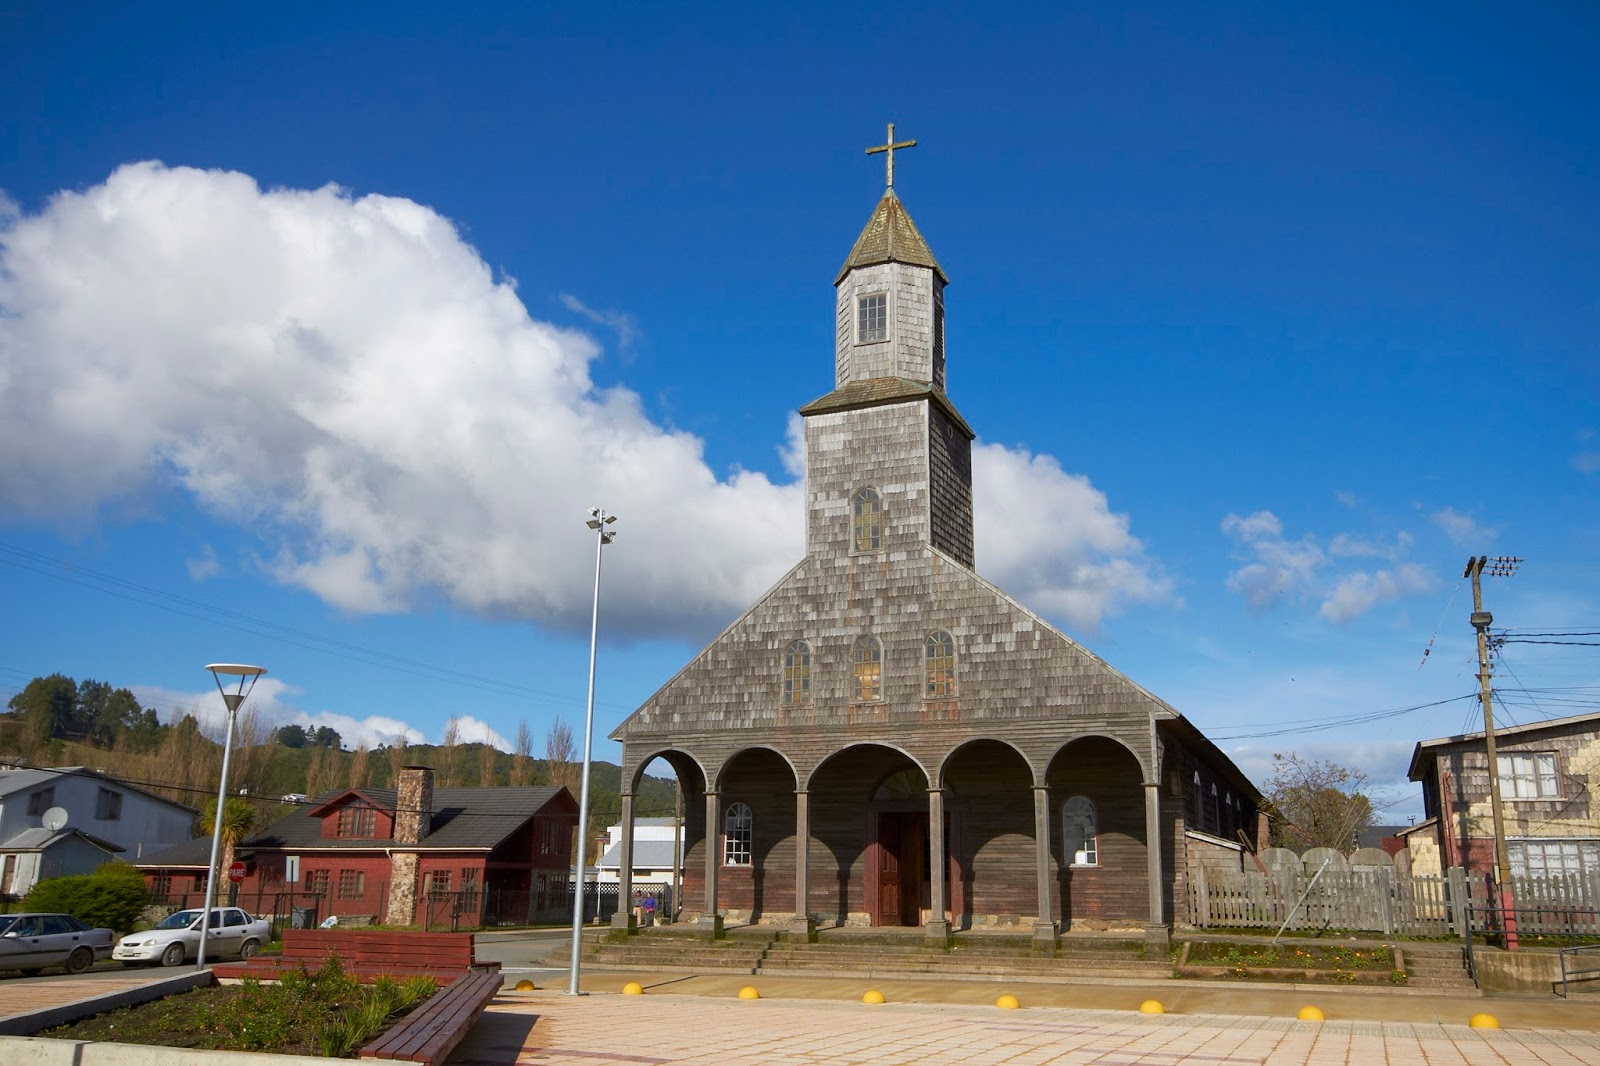 CENCIENTECNO: CHILE Y EL TURISMO: Iglesias de Chiloe - I Parte